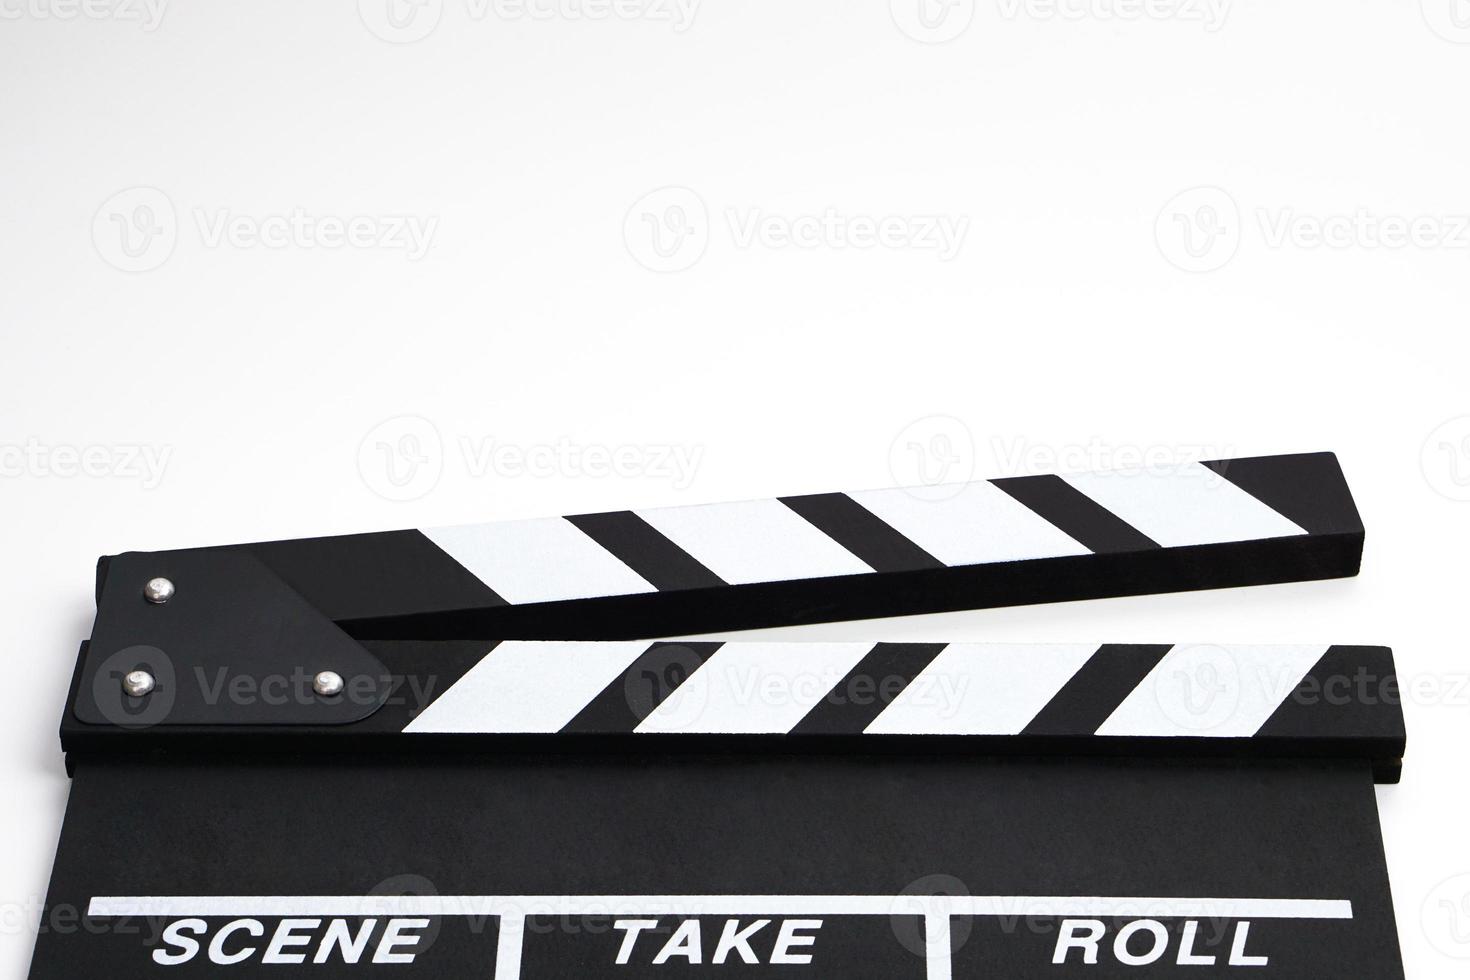 claqueta o pizarra de película color negro sobre fondo blanco. industria del cine, producción de video y concepto de cine. foto